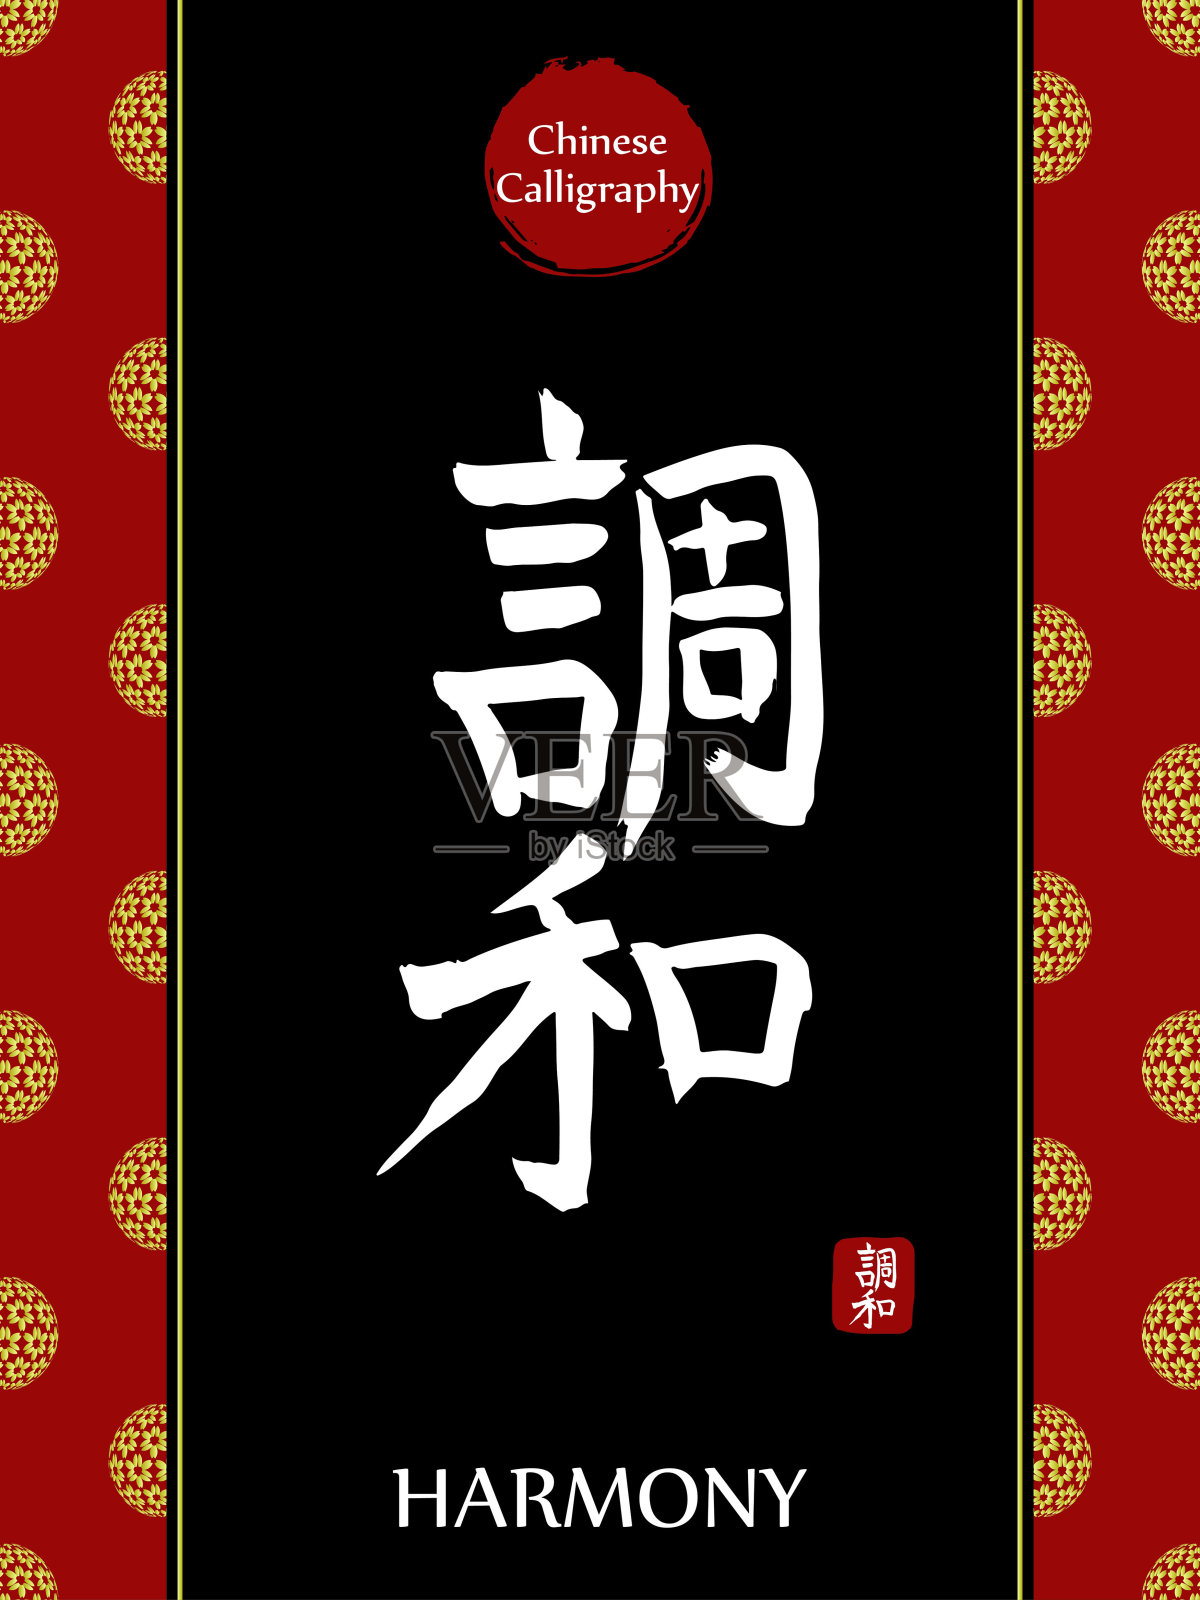 中国书法象形文字的翻译:和谐。亚洲金花球农历新年图案。向量中国符号在黑色背景。手绘图画文字。毛笔书法插画图片素材